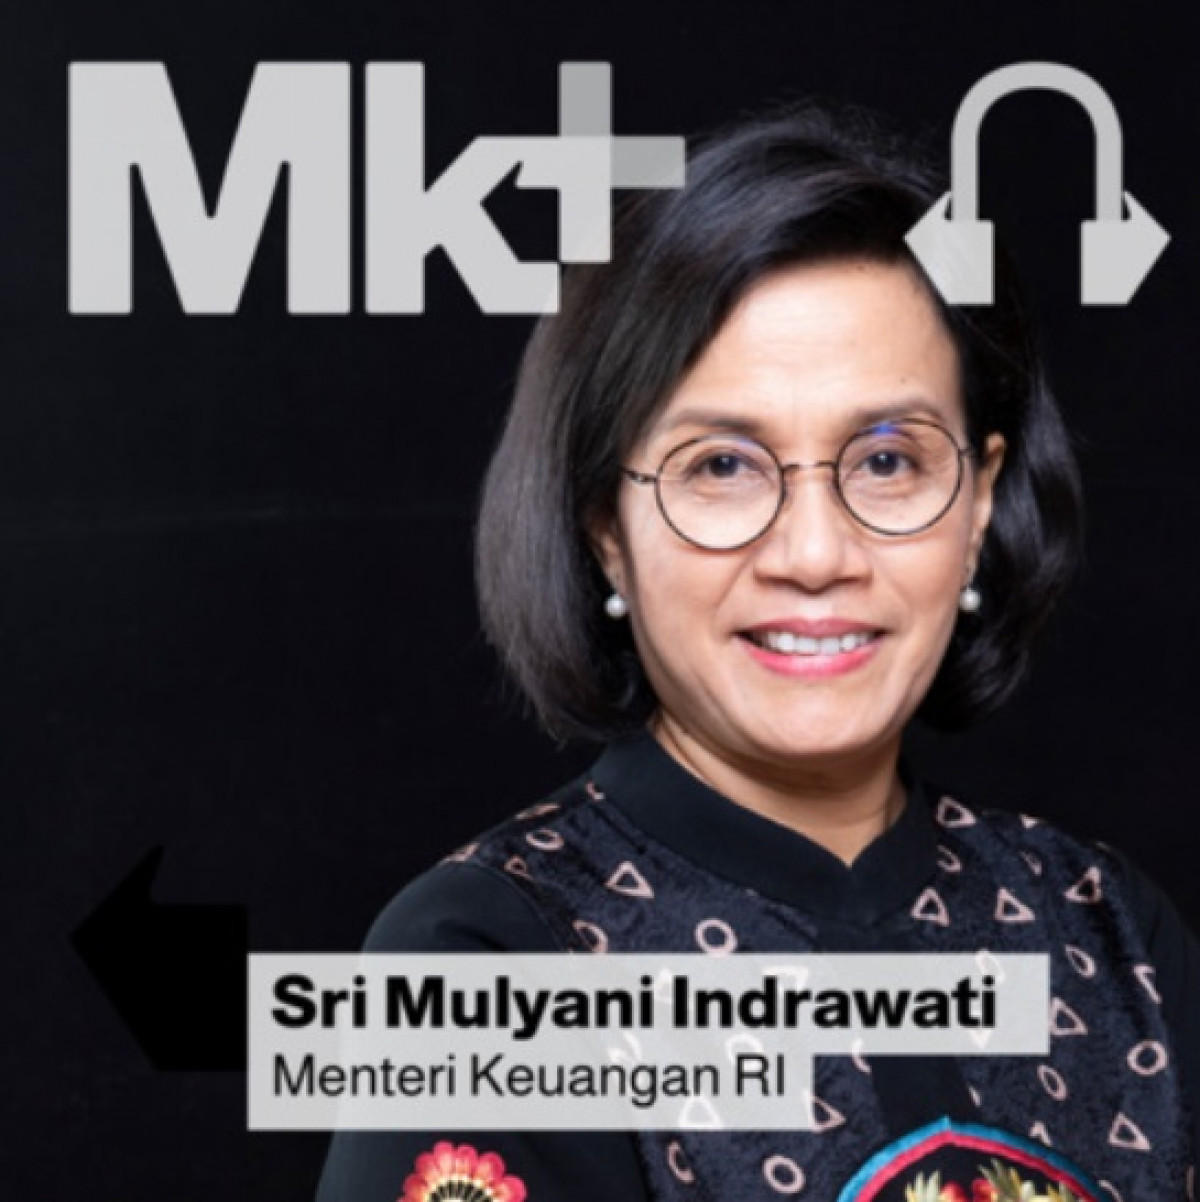 Eksklusif Podcast Bersama Menteri Keuangan, Sri Mulyani Indrawati, Diskusi tentang Perubahan Iklim